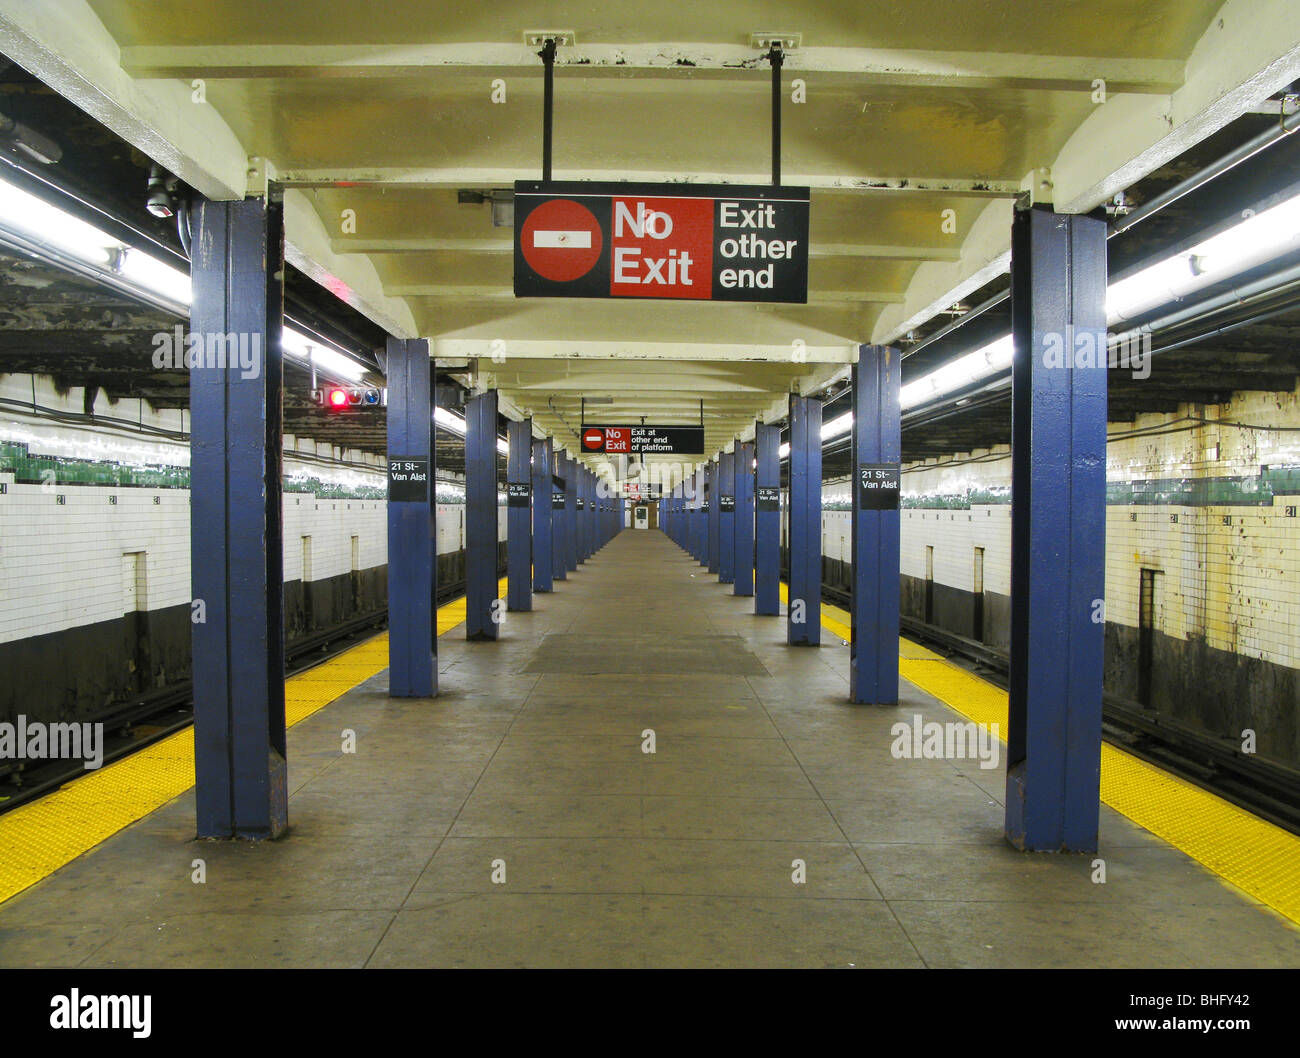 Image result for subway platform